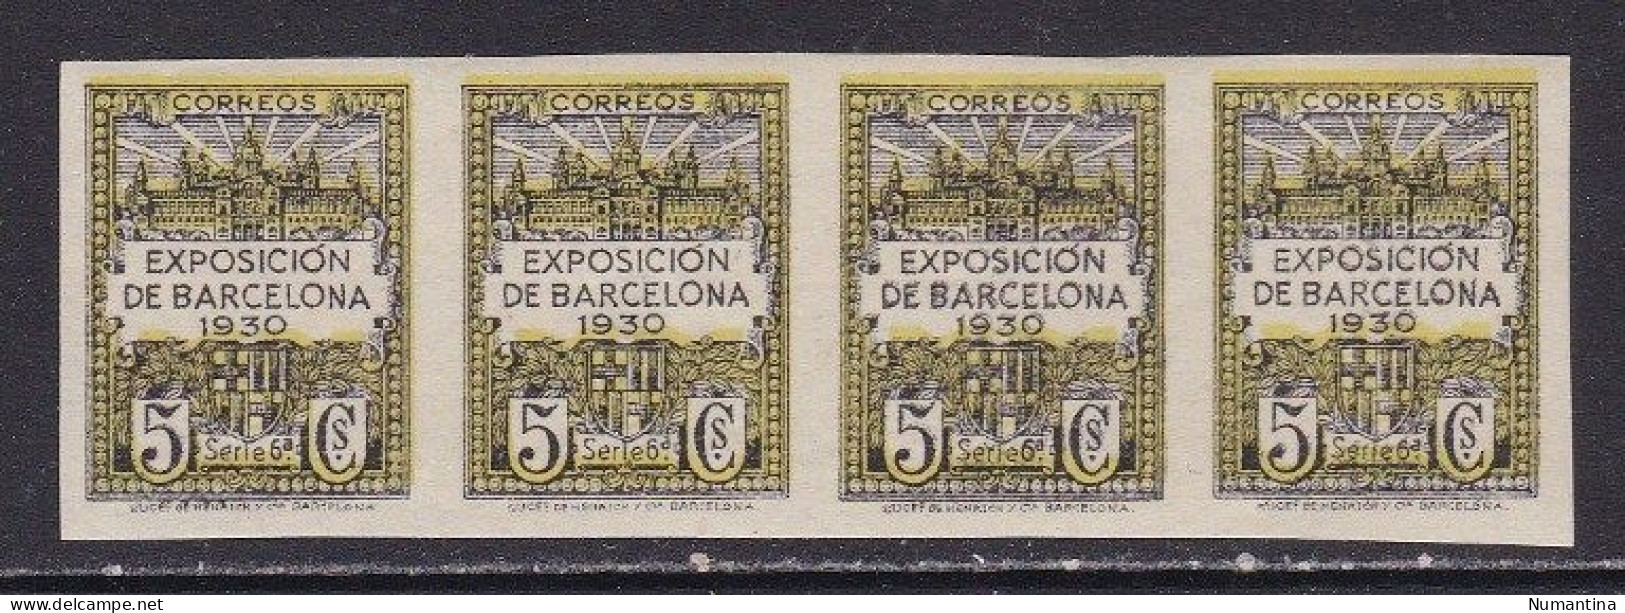 1929 - España - Barcelona - Edifil 4s - Sin Dentar - Bloque 4 - Exposicion De Barcelona 1930 - MNH - Barcelona